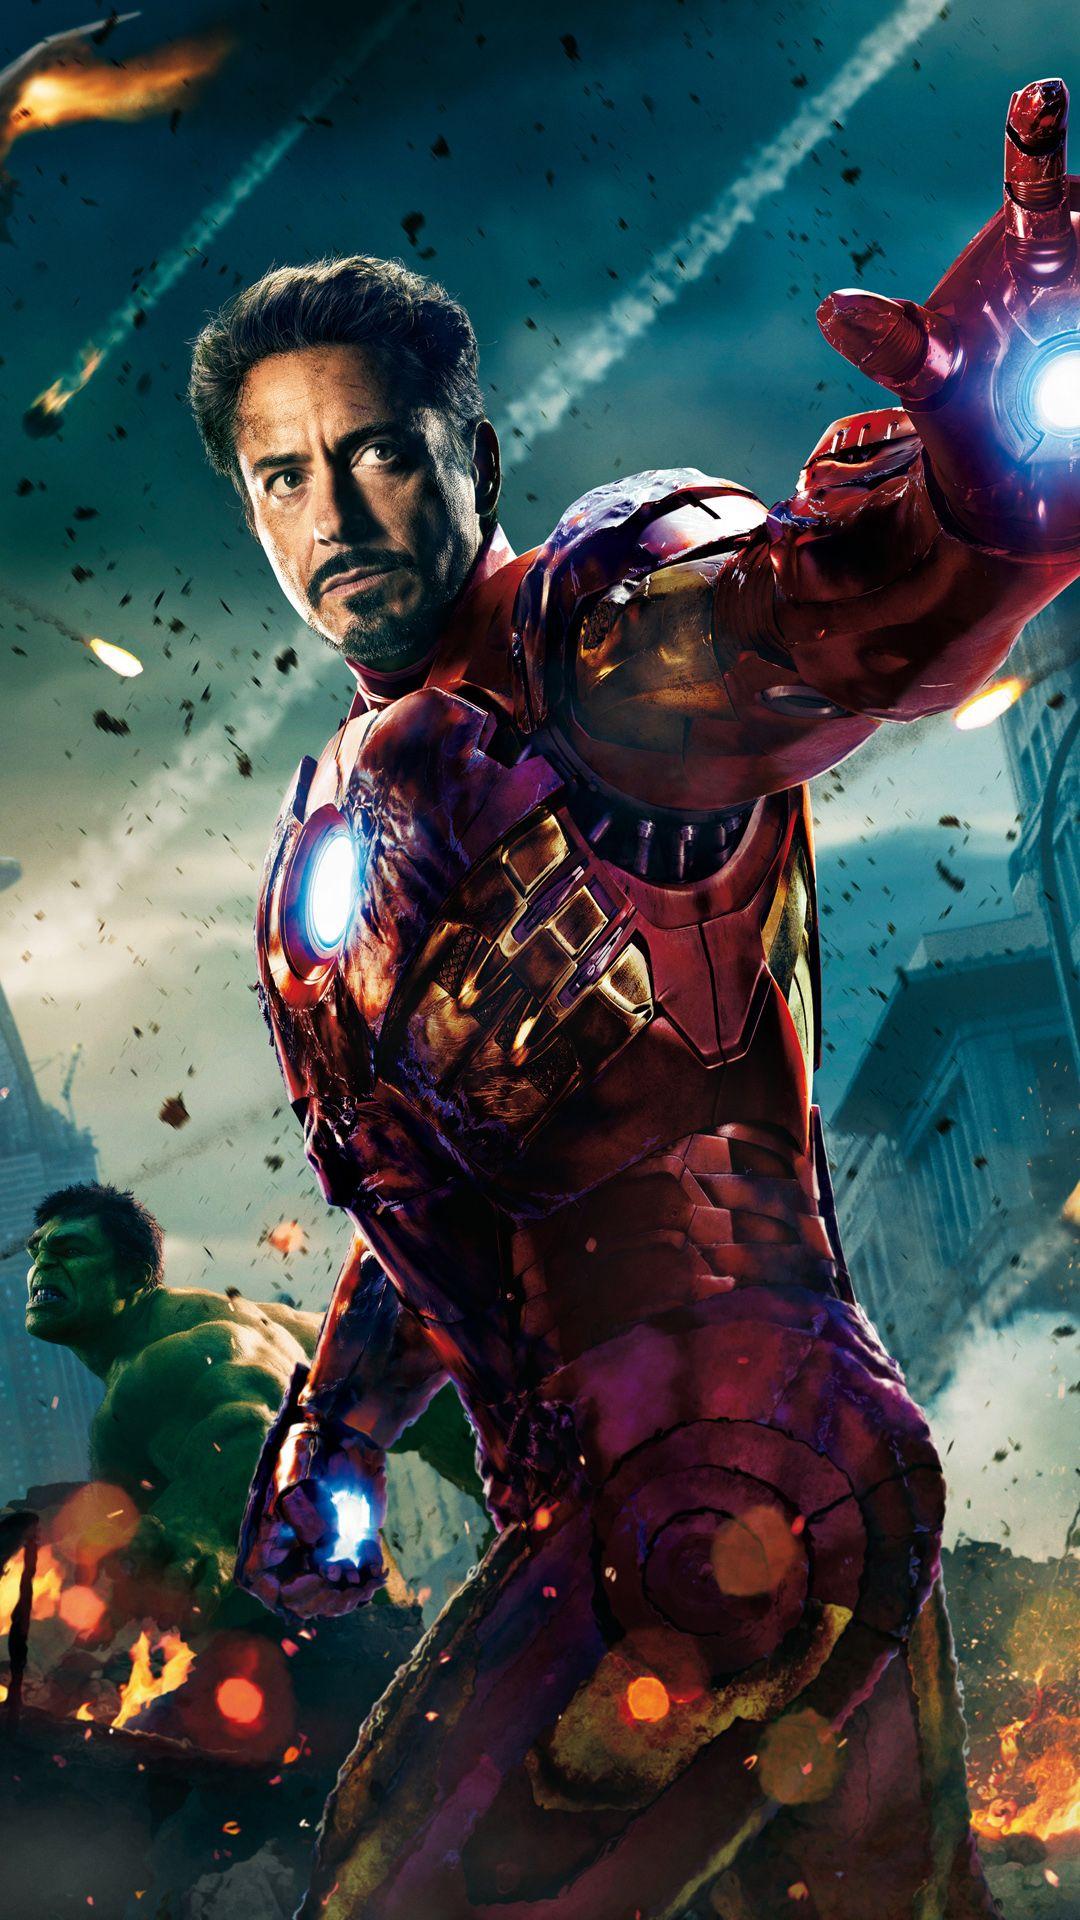 1080x1920 The Avengers Người sắt và Hulk - Hình nền htc one tốt nhất, miễn phí